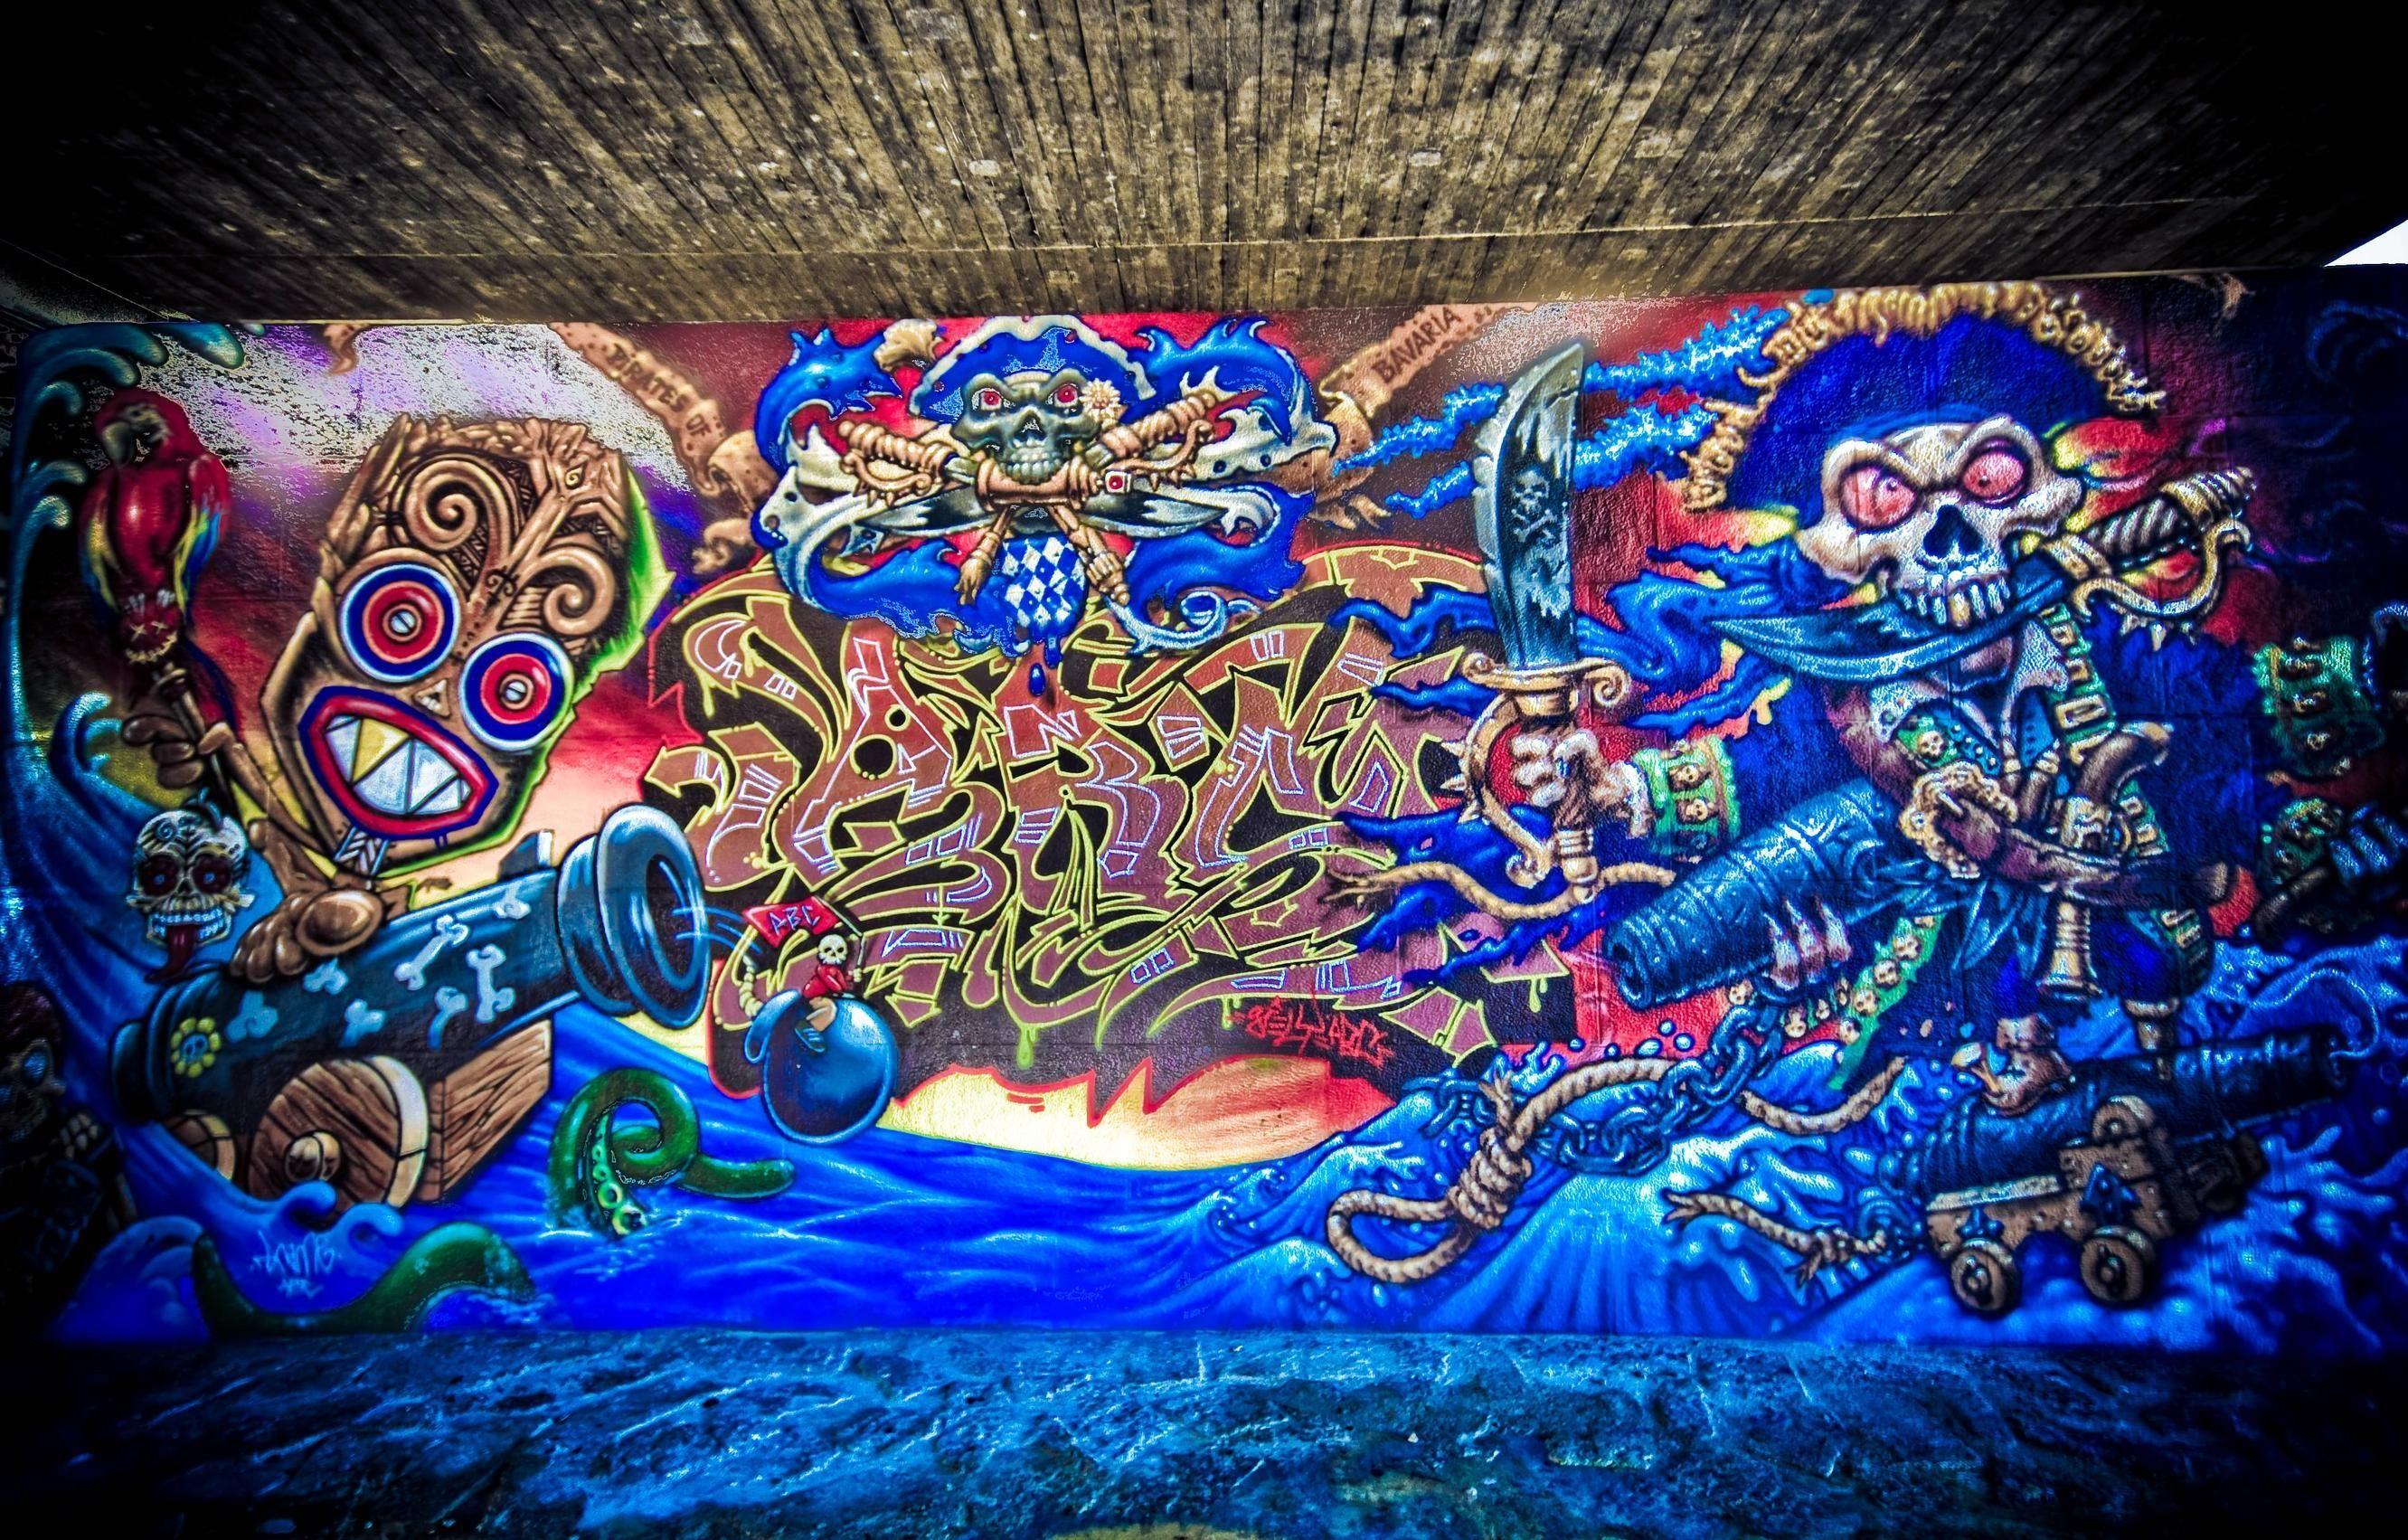 Graffiti Wallpaper Artistic HD Background Amazing. forup